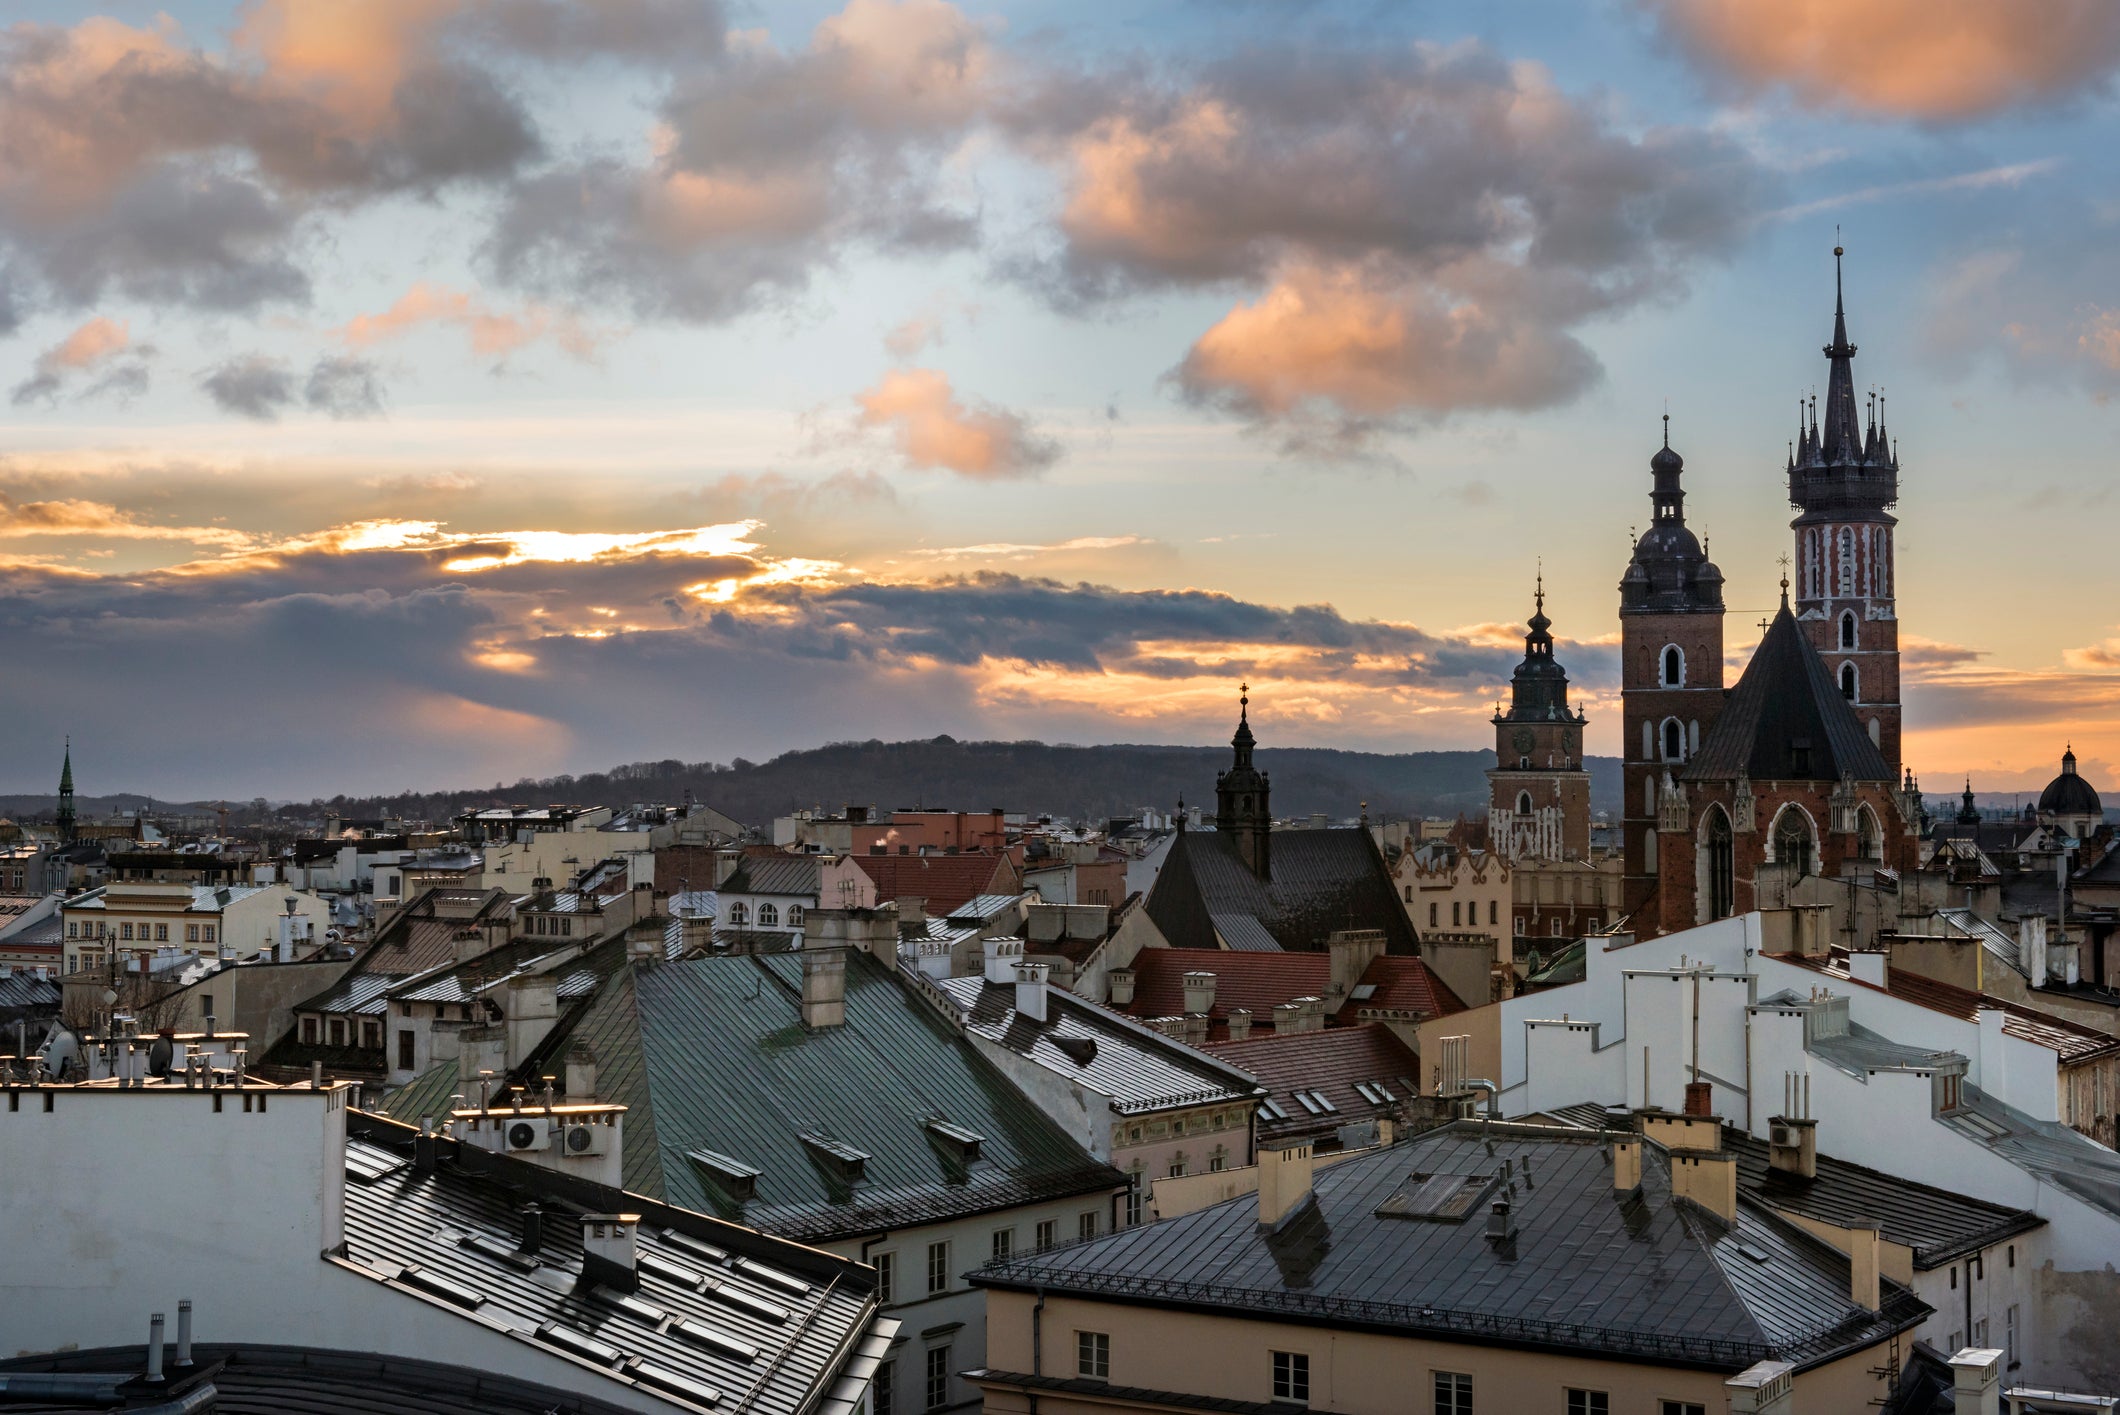 Sunset over Krakow in Poland